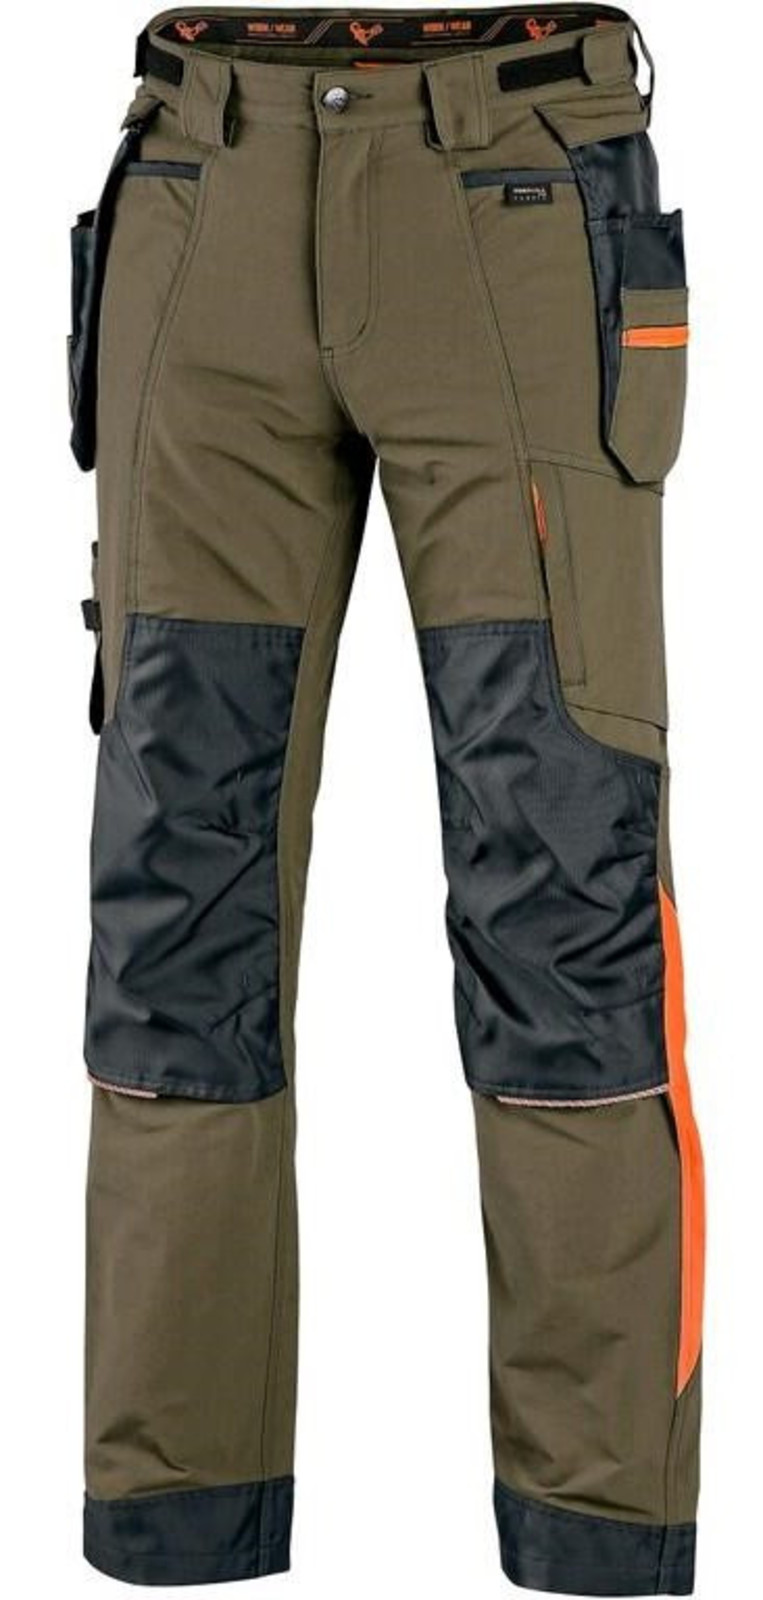 Montérkové nohavice CXS Naos s reflexnými doplnkami - veľkosť: 56, farba: khaki/oranžová